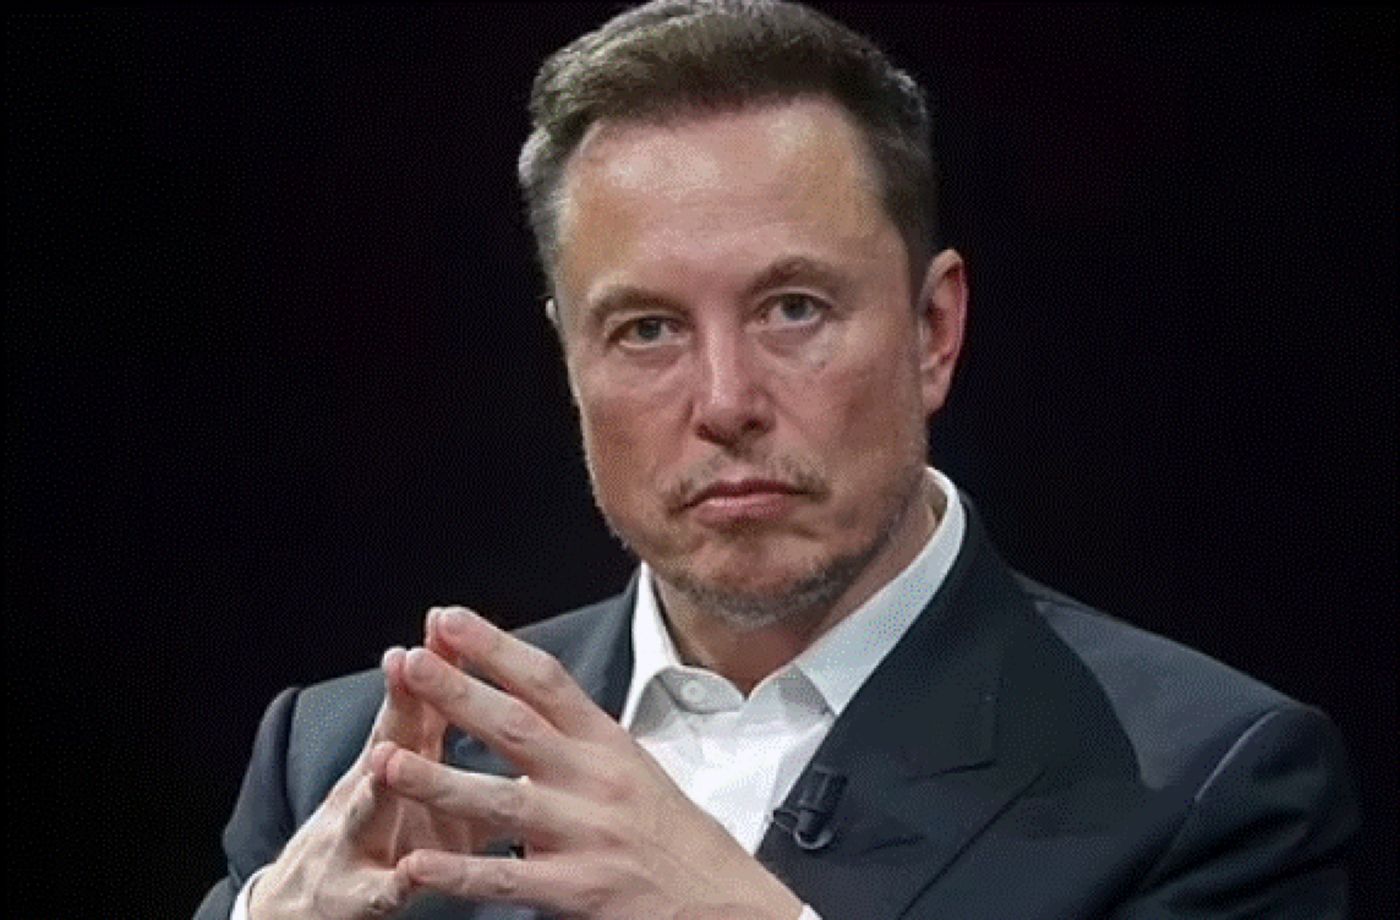 Elon Musk le-a arătat prietenilor imagini intime cu fosta lui parteneră. Femeia a mărturisit totul pe Twitter